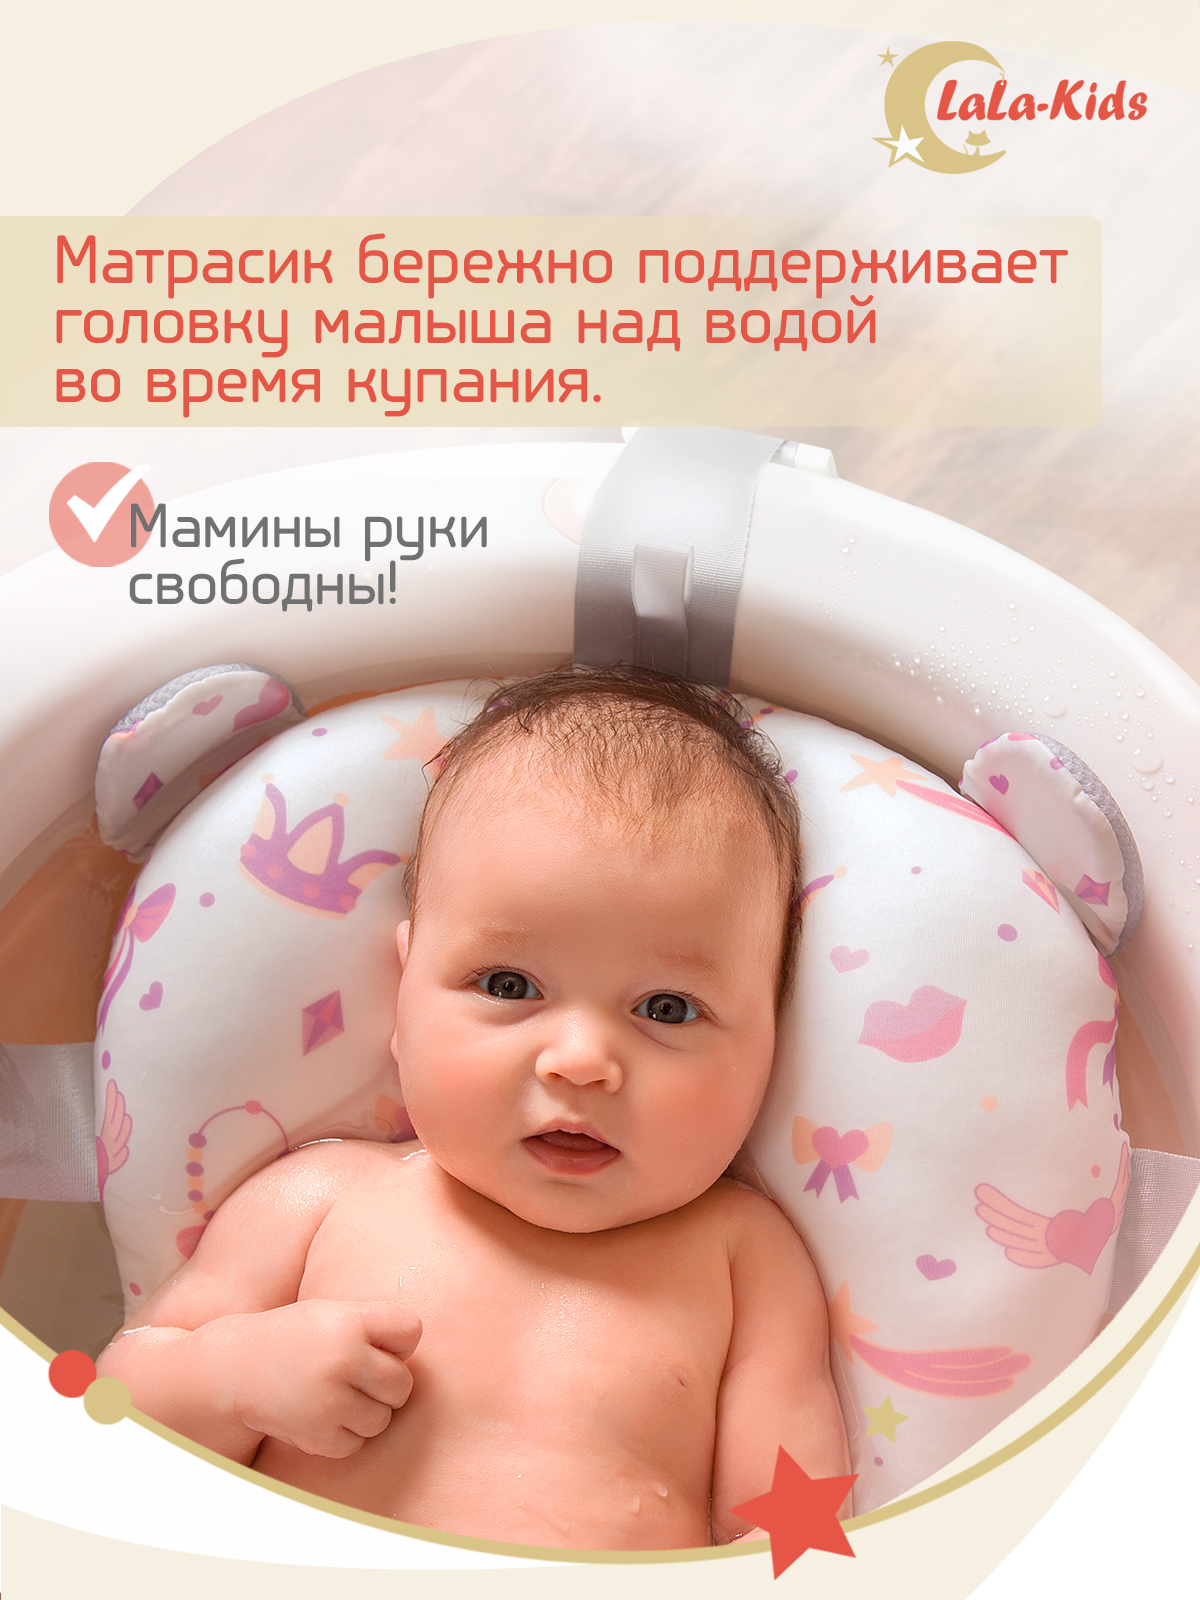 Ванночка для новорожденных LaLa-Kids складная с матрасиком в комплекте - фото 11